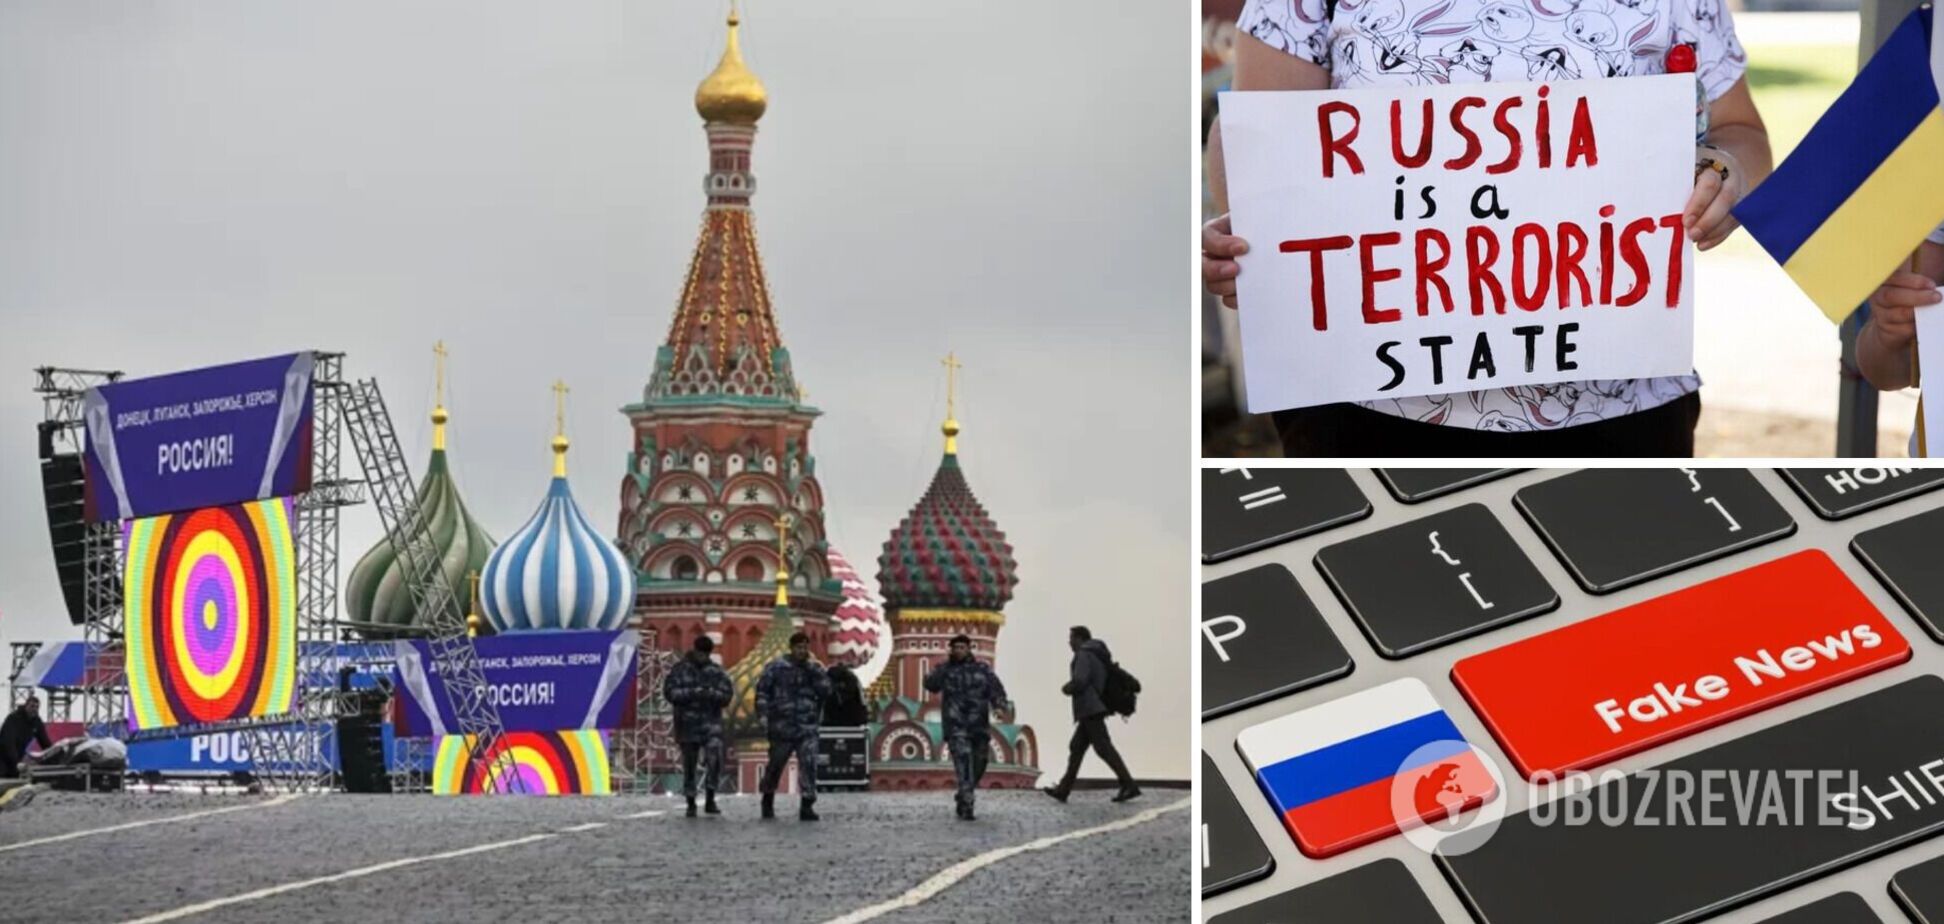 Кремль может готовить теракты 'под чужим флагом' внутри самой России – разведка Польши